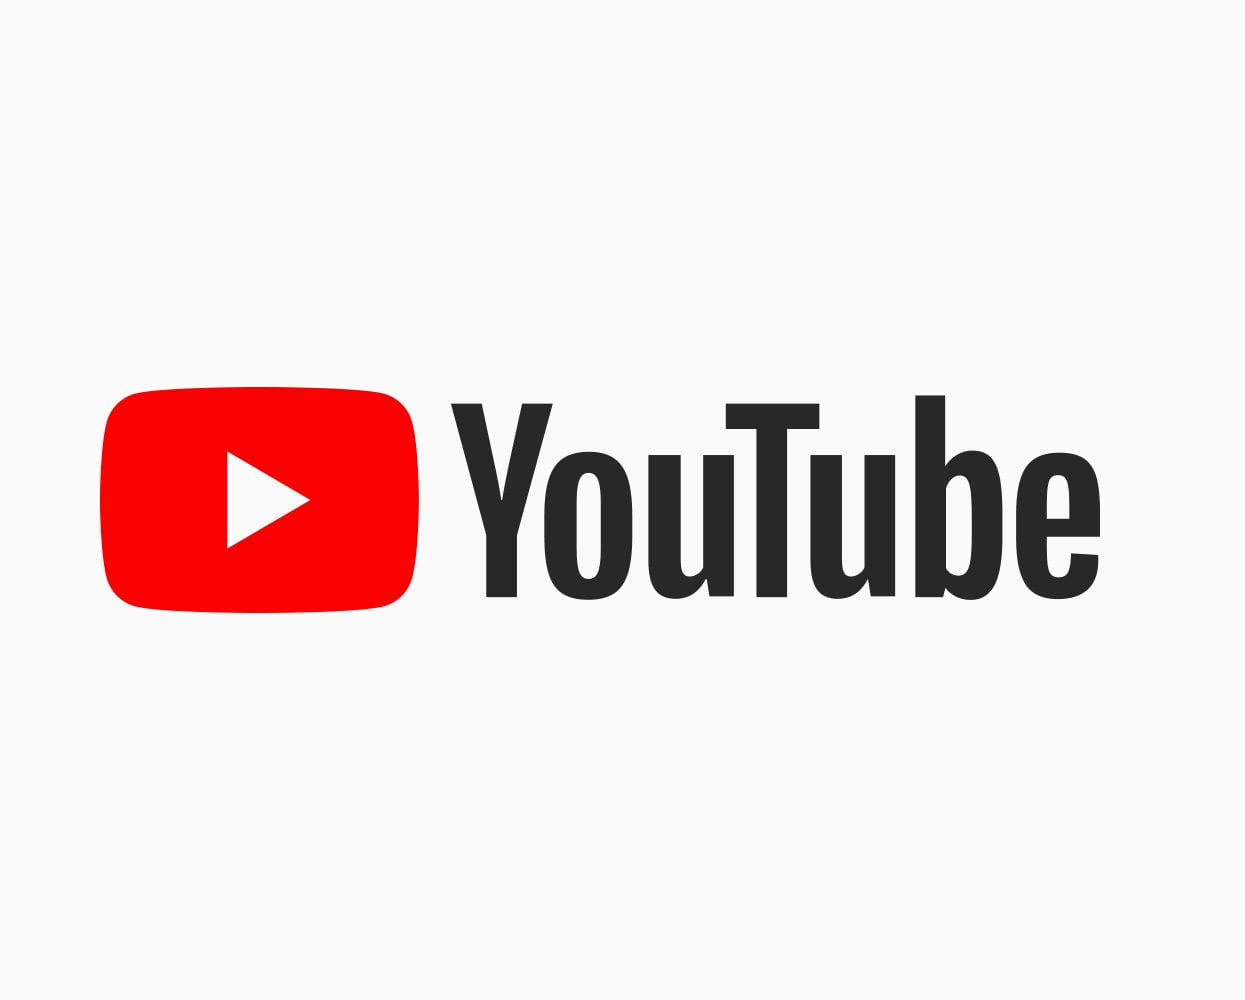 Como realizar o download de vídeos do YouTube com eficiência e segurança